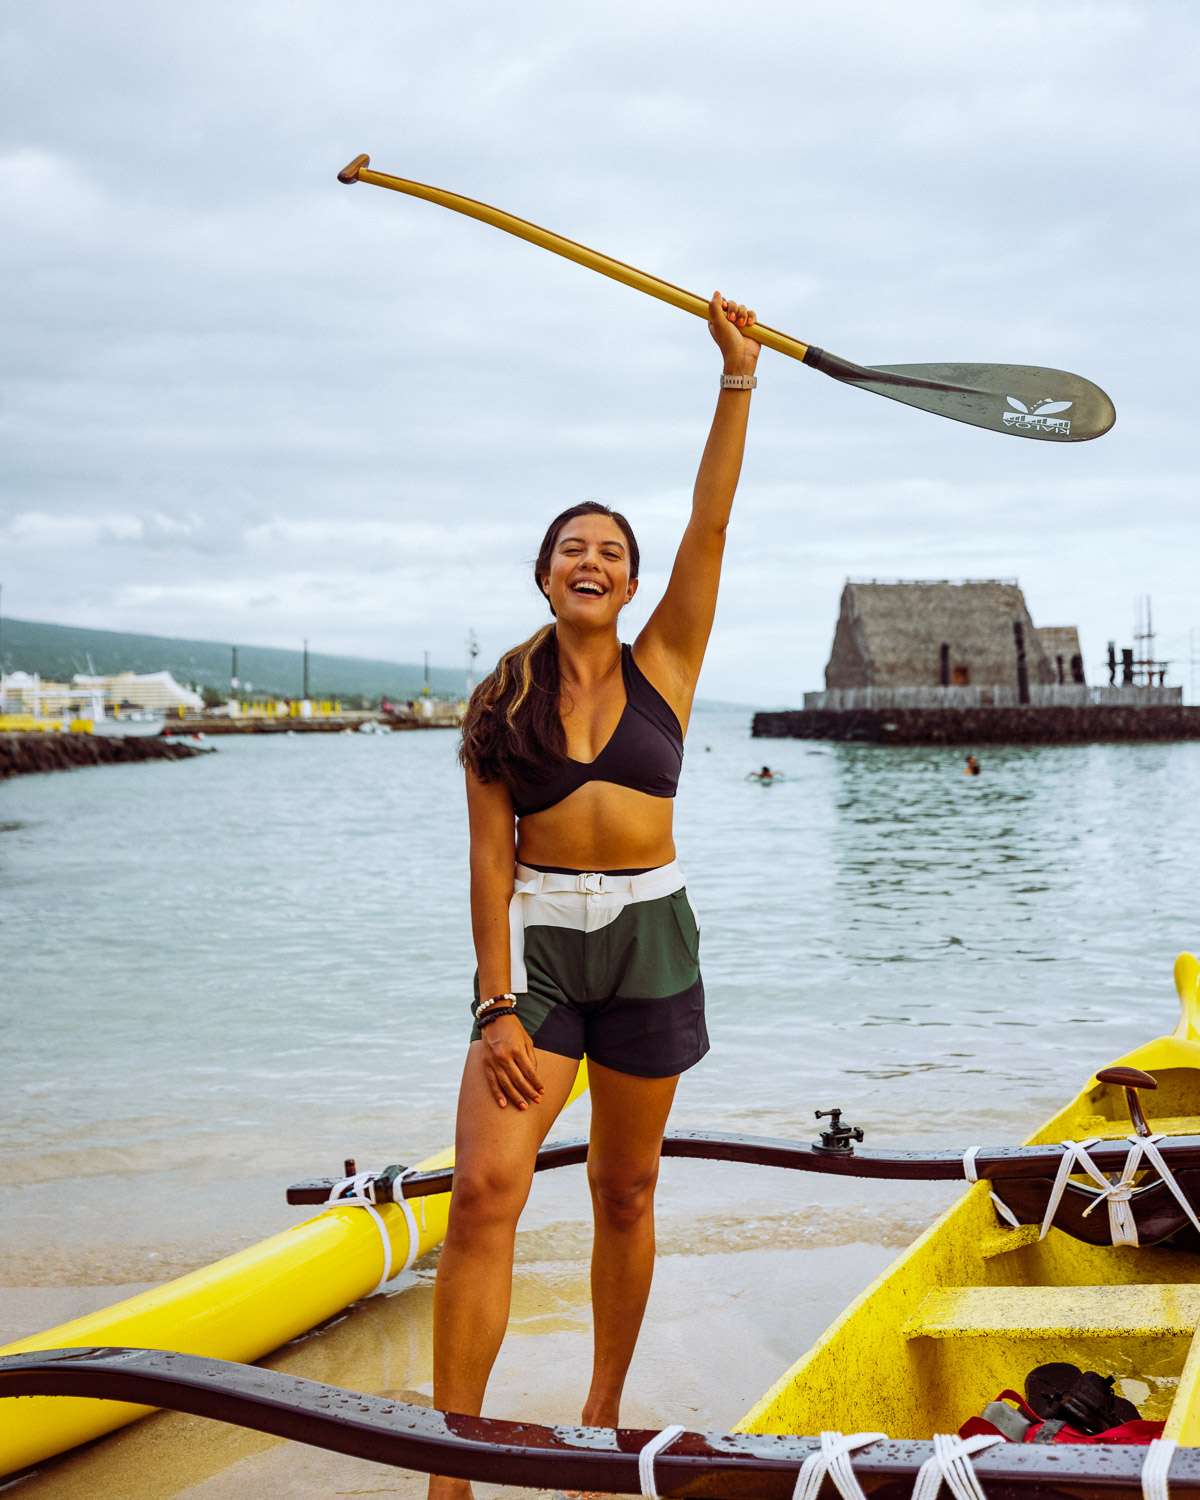 Rachel Off Duty: Woman With Canoe on the Big Island